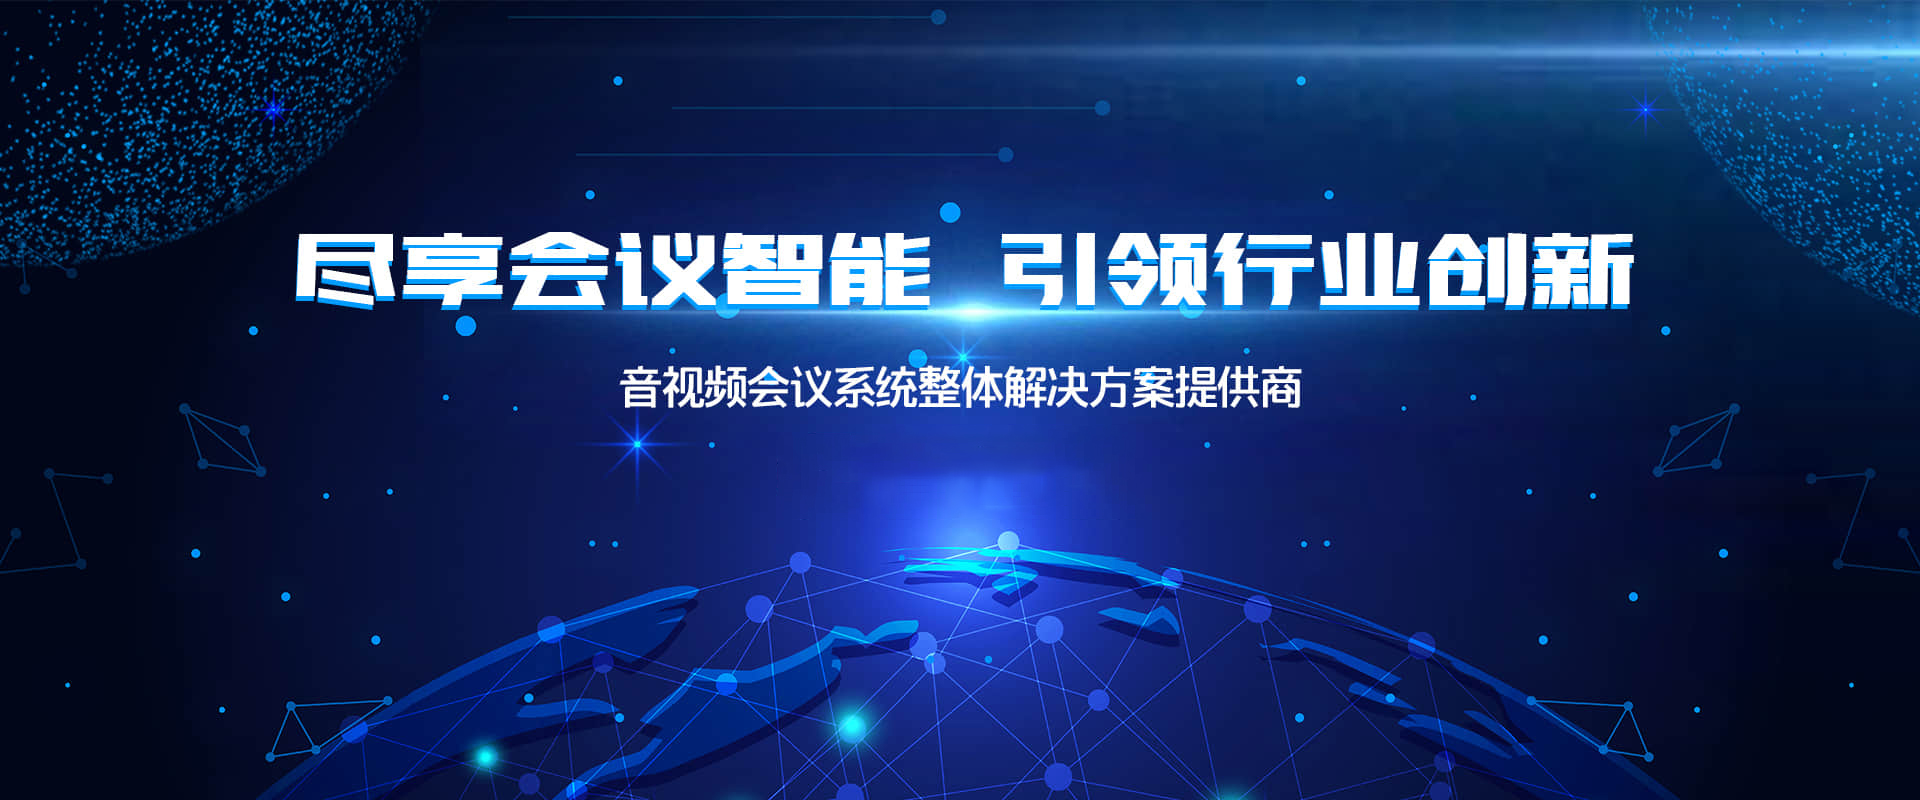 广州三阳智能科技有限公司